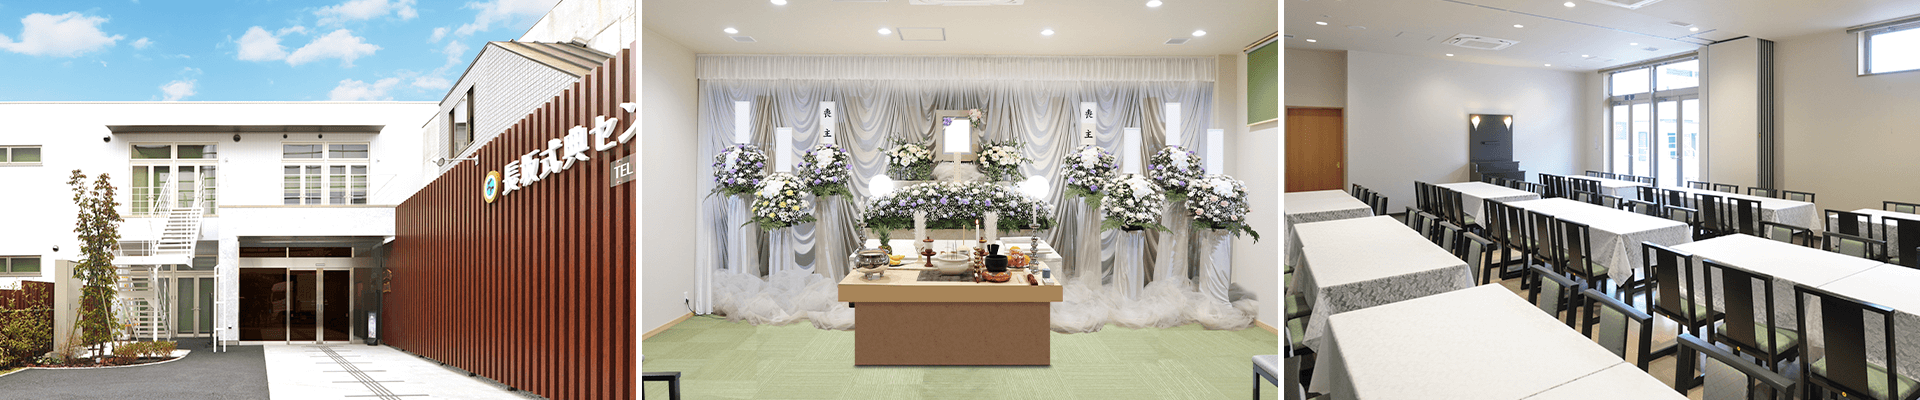 葬儀・葬式・家族葬なら16.5万円からできる長坂式典センター 武蔵野市の葬儀場一覧